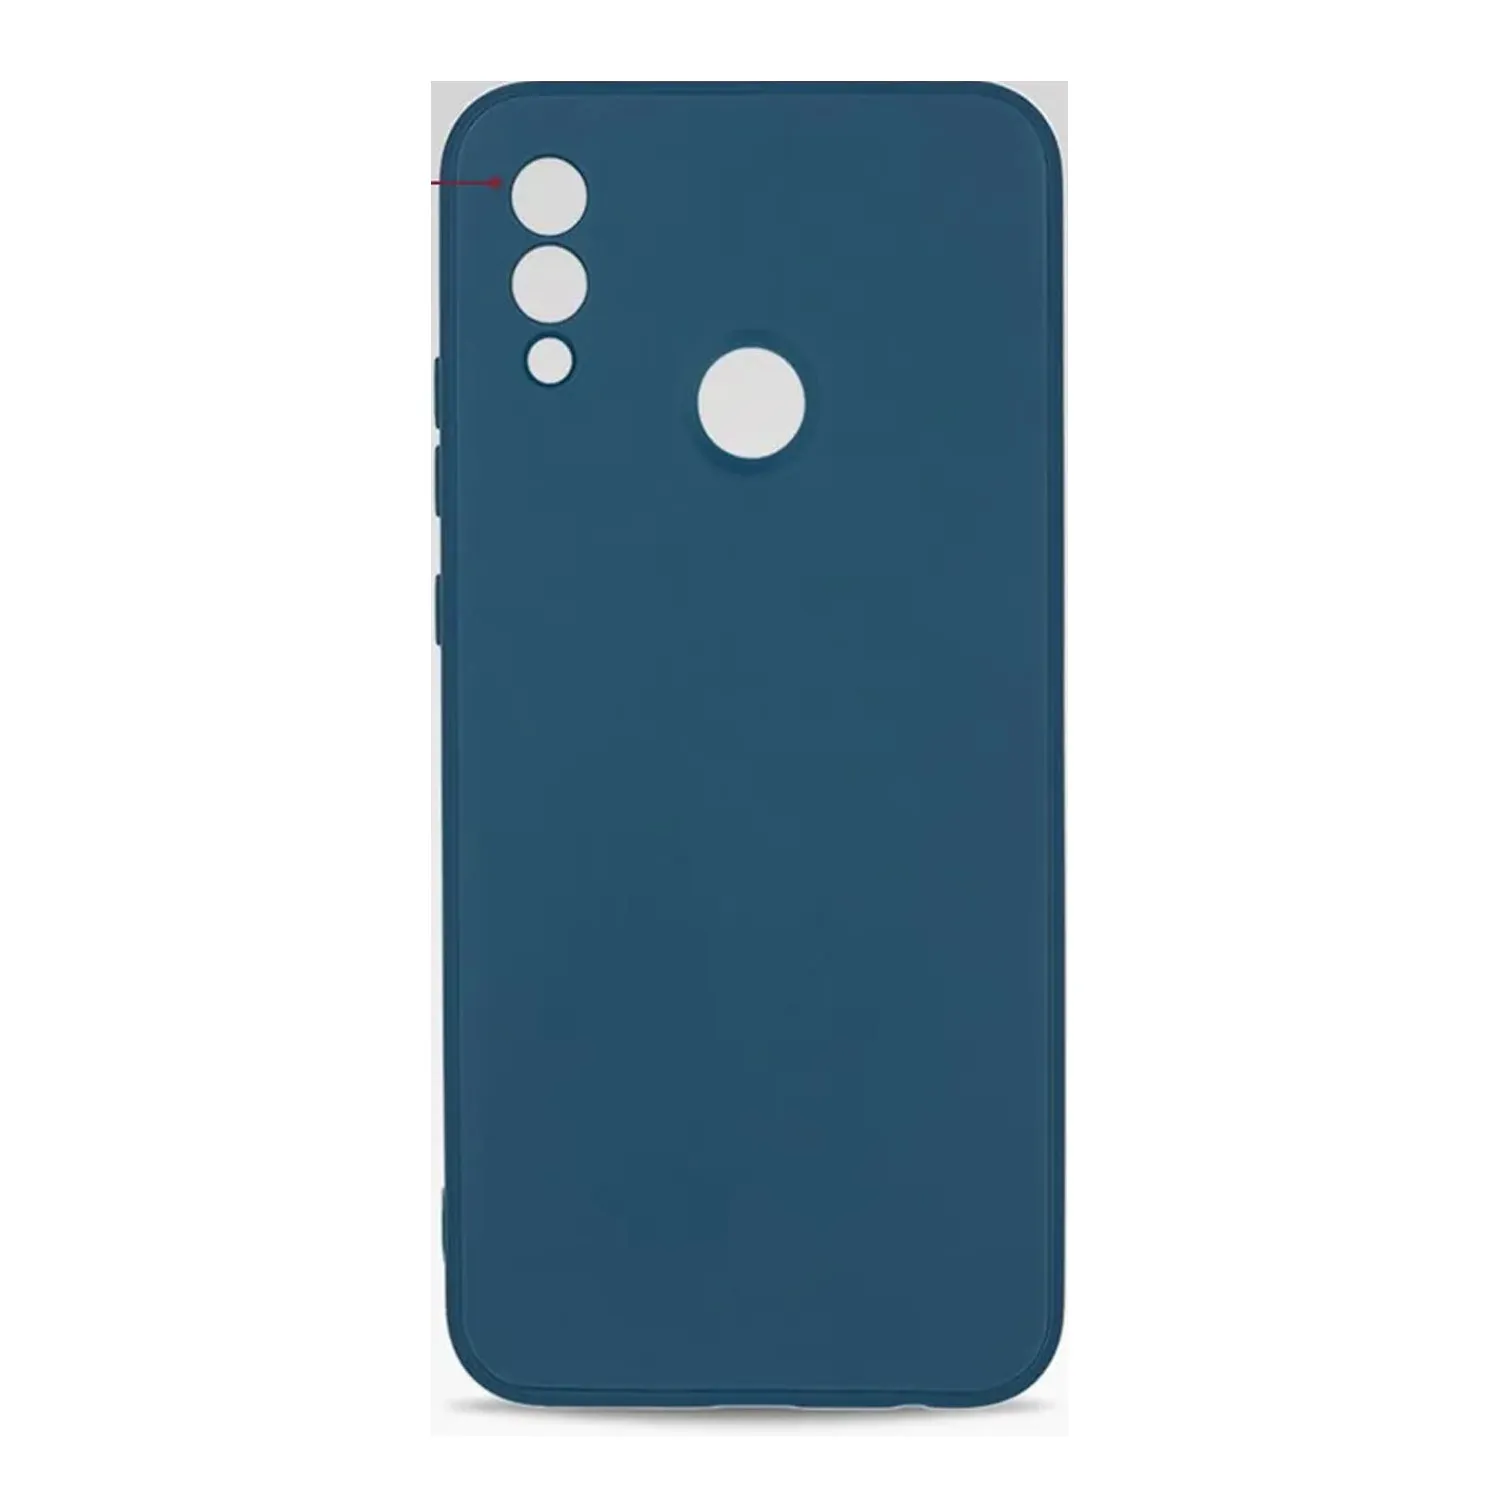 Cиликоновый чехол FASHION CASE Huawei P SMART (темно-синий)